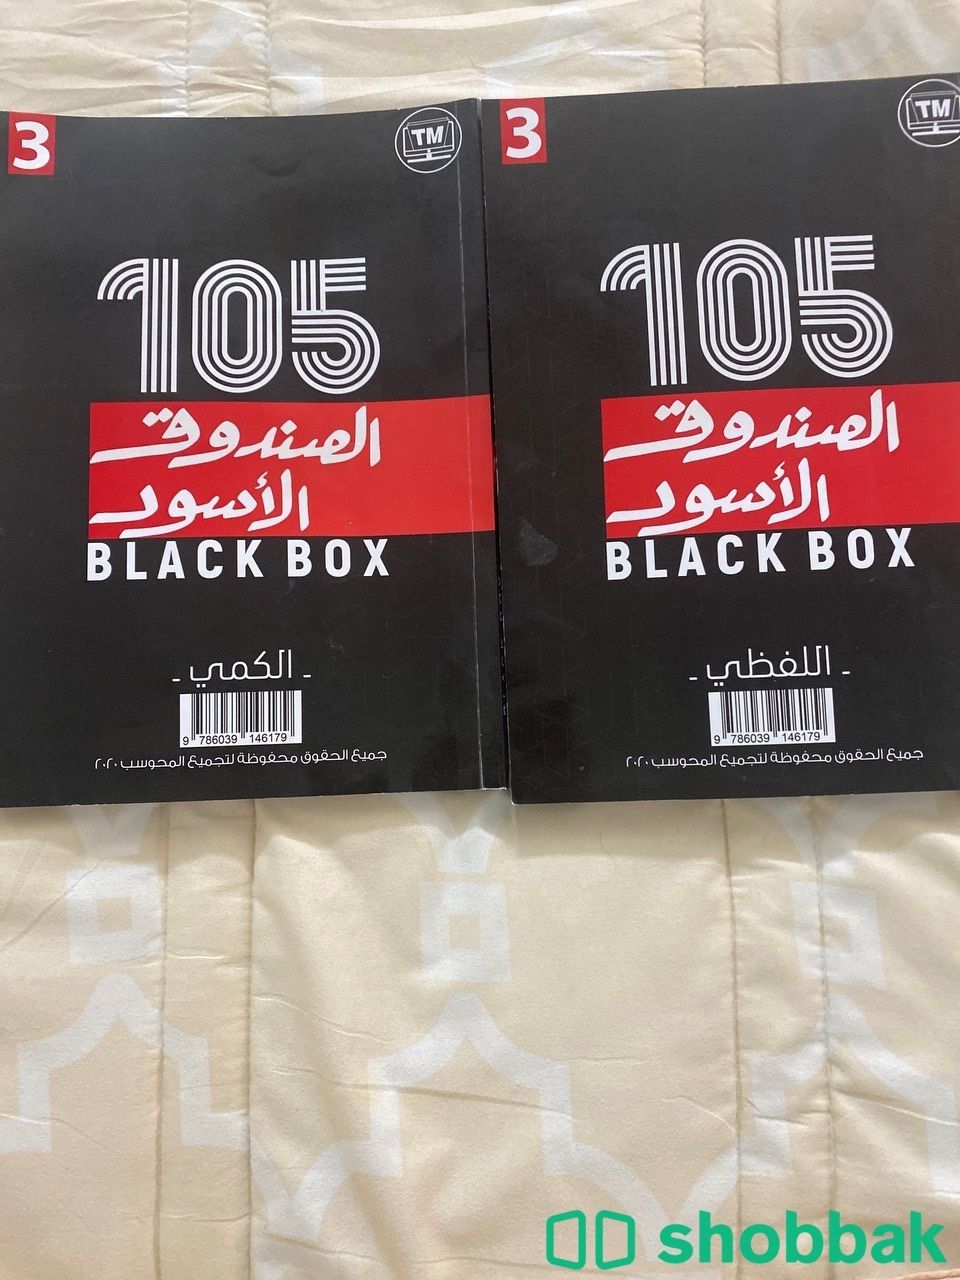 كتاب قدرات ( الصندوق الاسود )105 Shobbak Saudi Arabia